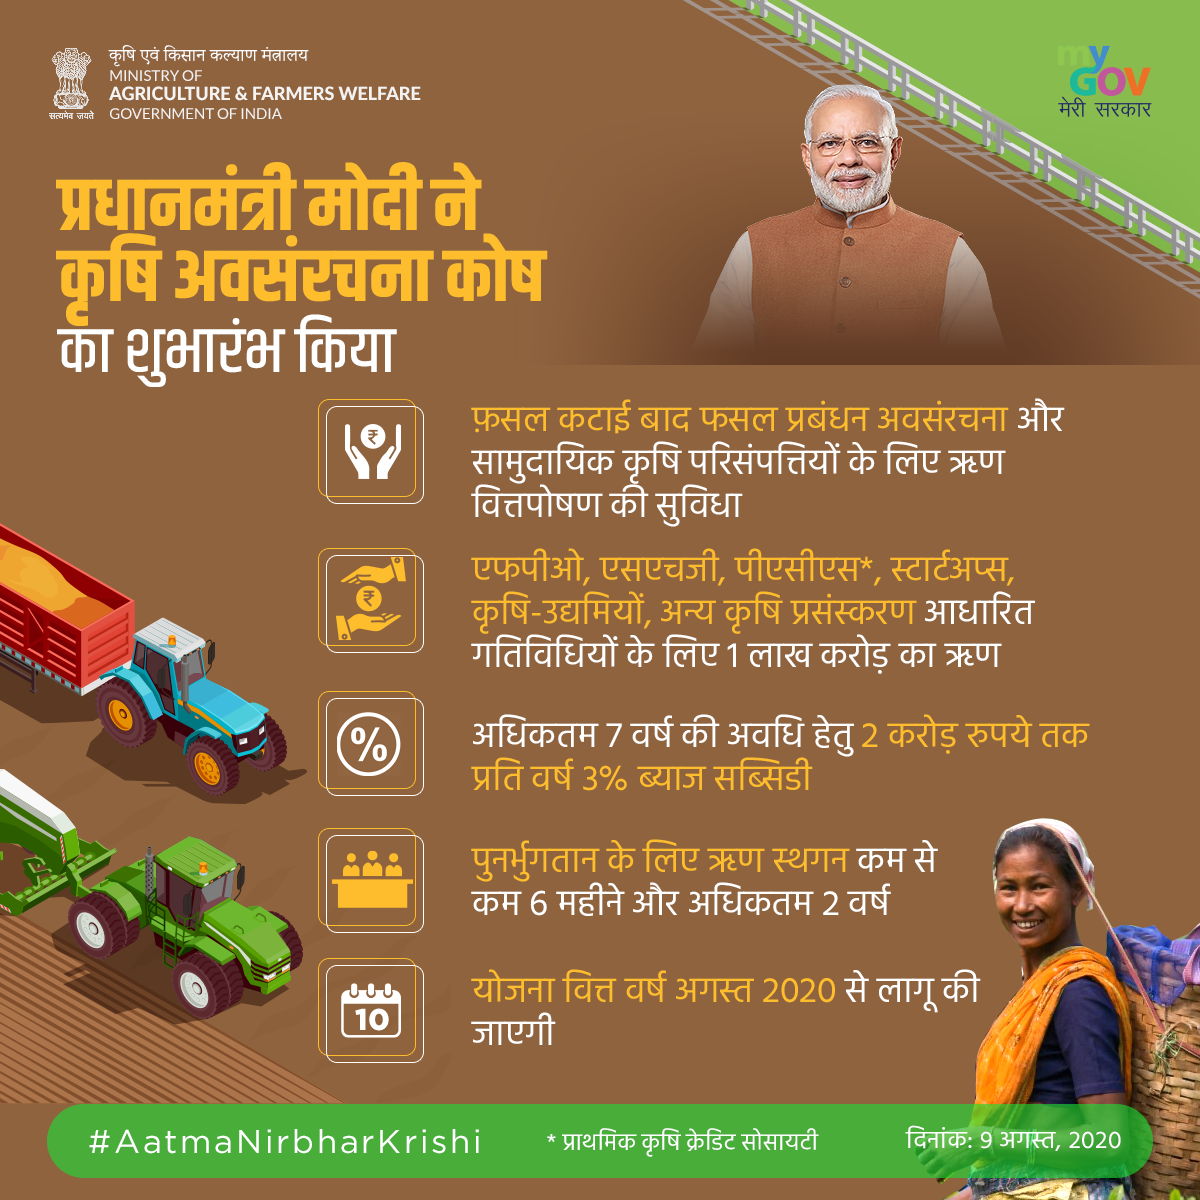 प्रधानमंत्री मोदी ने कृषि अवसंरचना कोष का शुभारंभ किया